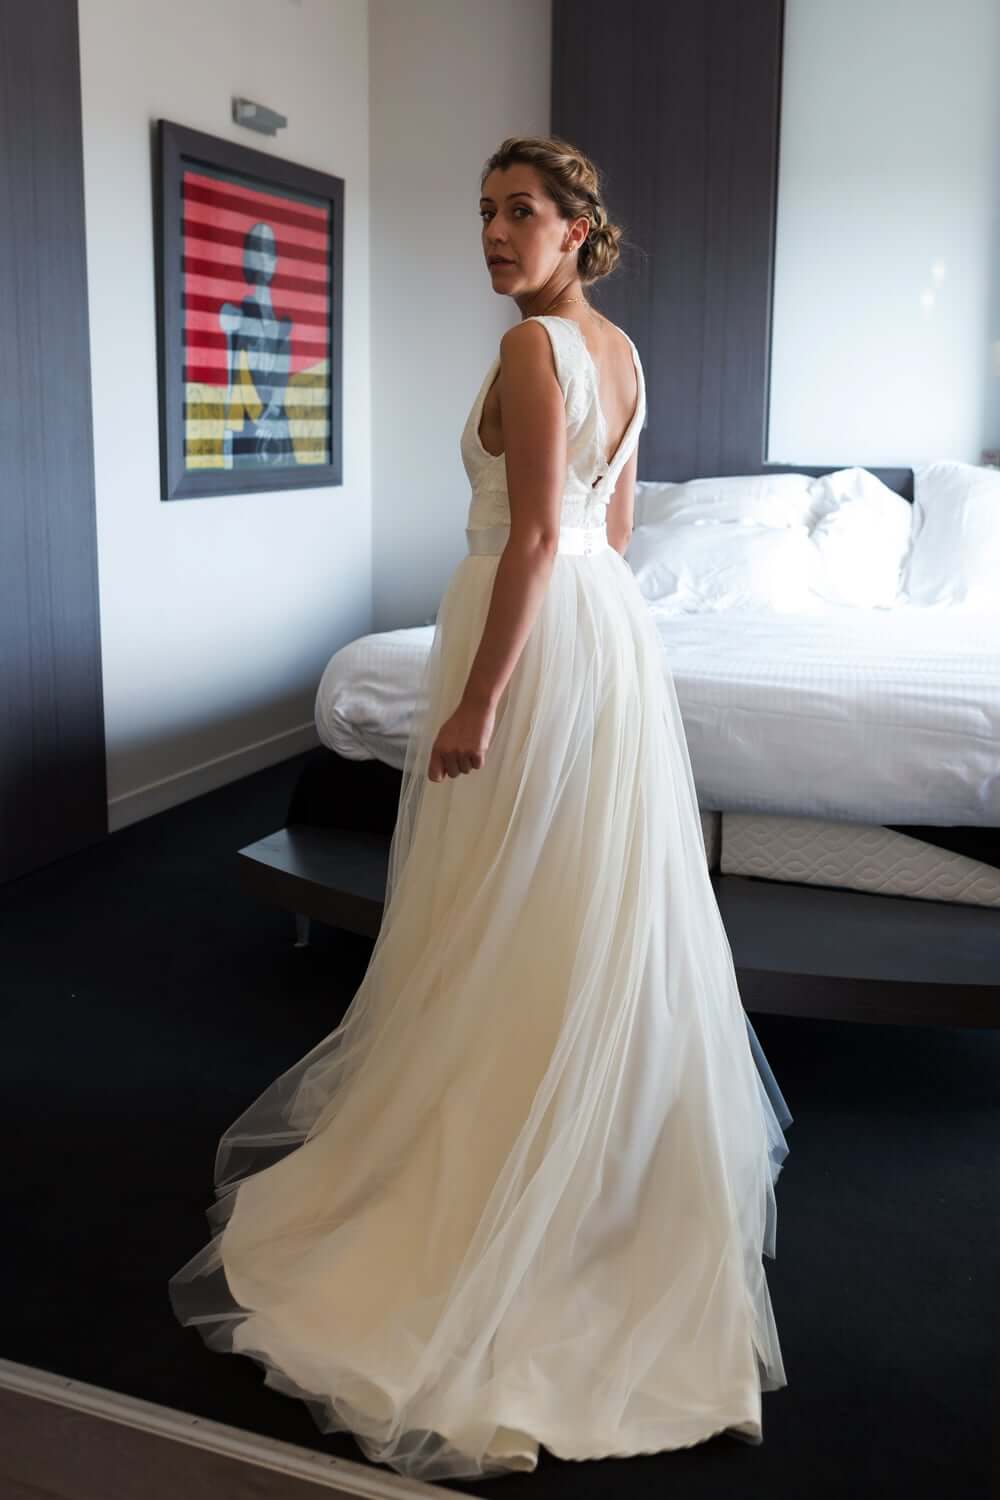 Robe de Mariée Longue dans la chambre d'hôtel